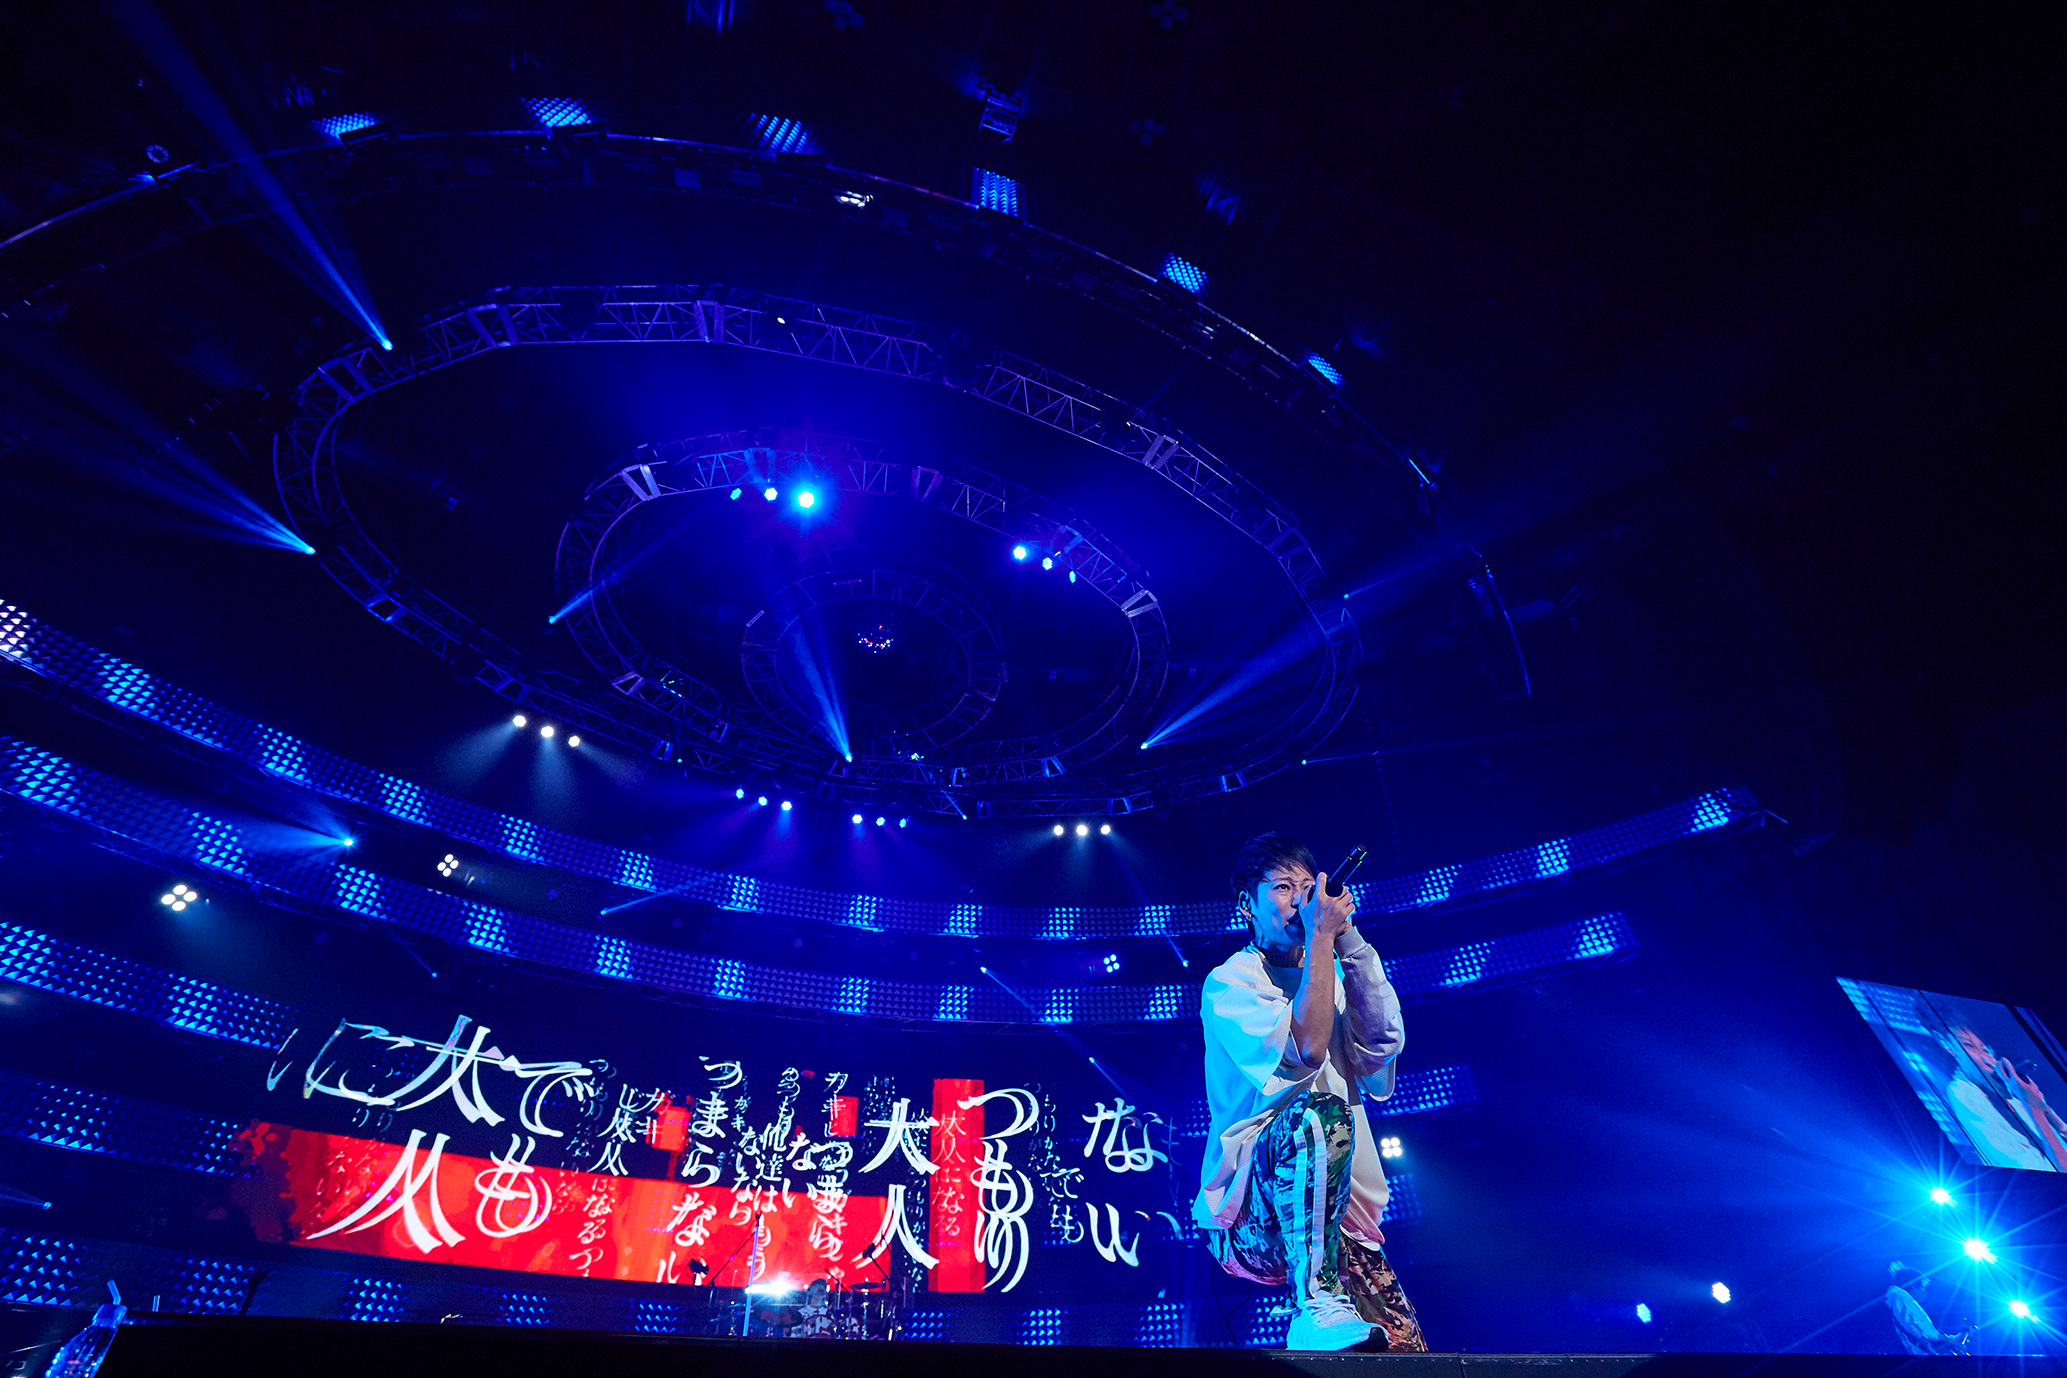 東京ドームでの 男祭り ライブが決定したuverworld Wowowでは18年末に開催された横浜アリーナでの 男祭り をいち早く4 30 火 休 に放送 株式会社wowowのプレスリリース